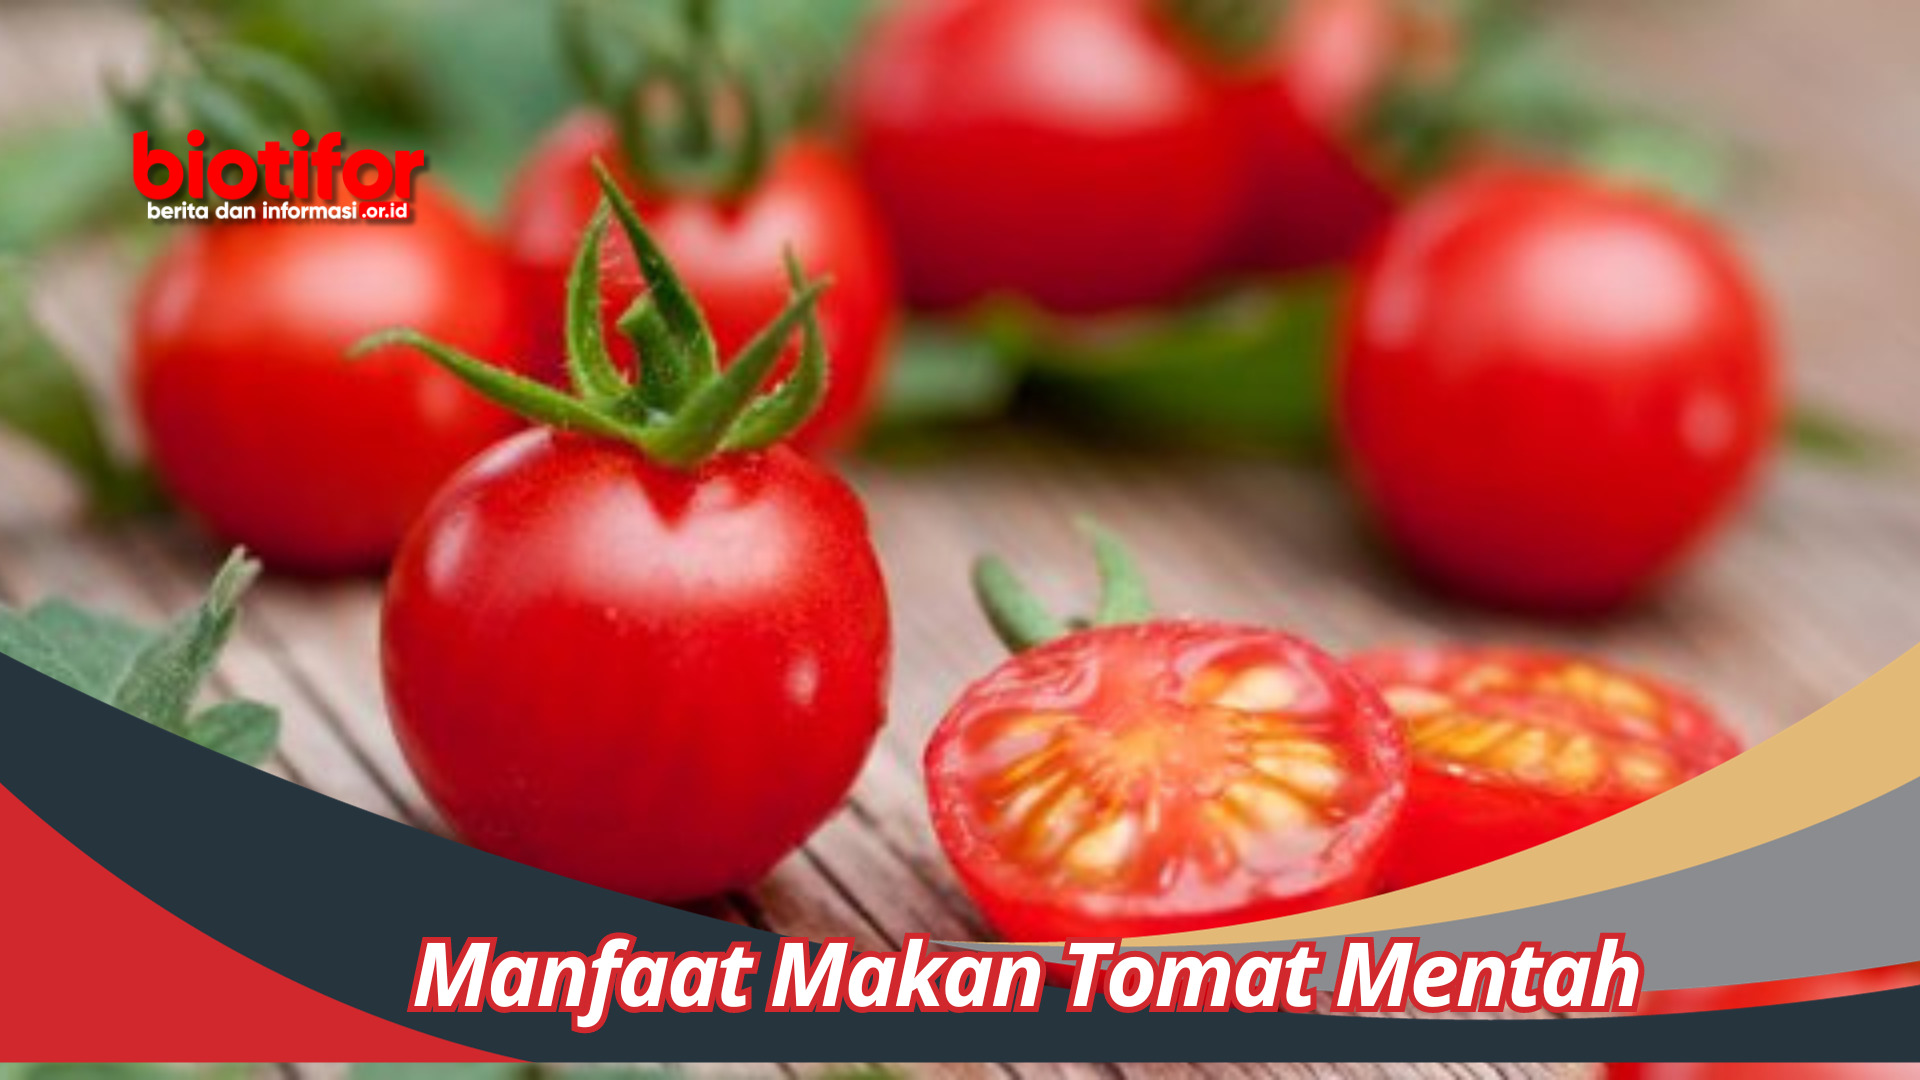 Manfaat Makan Tomat Mentah